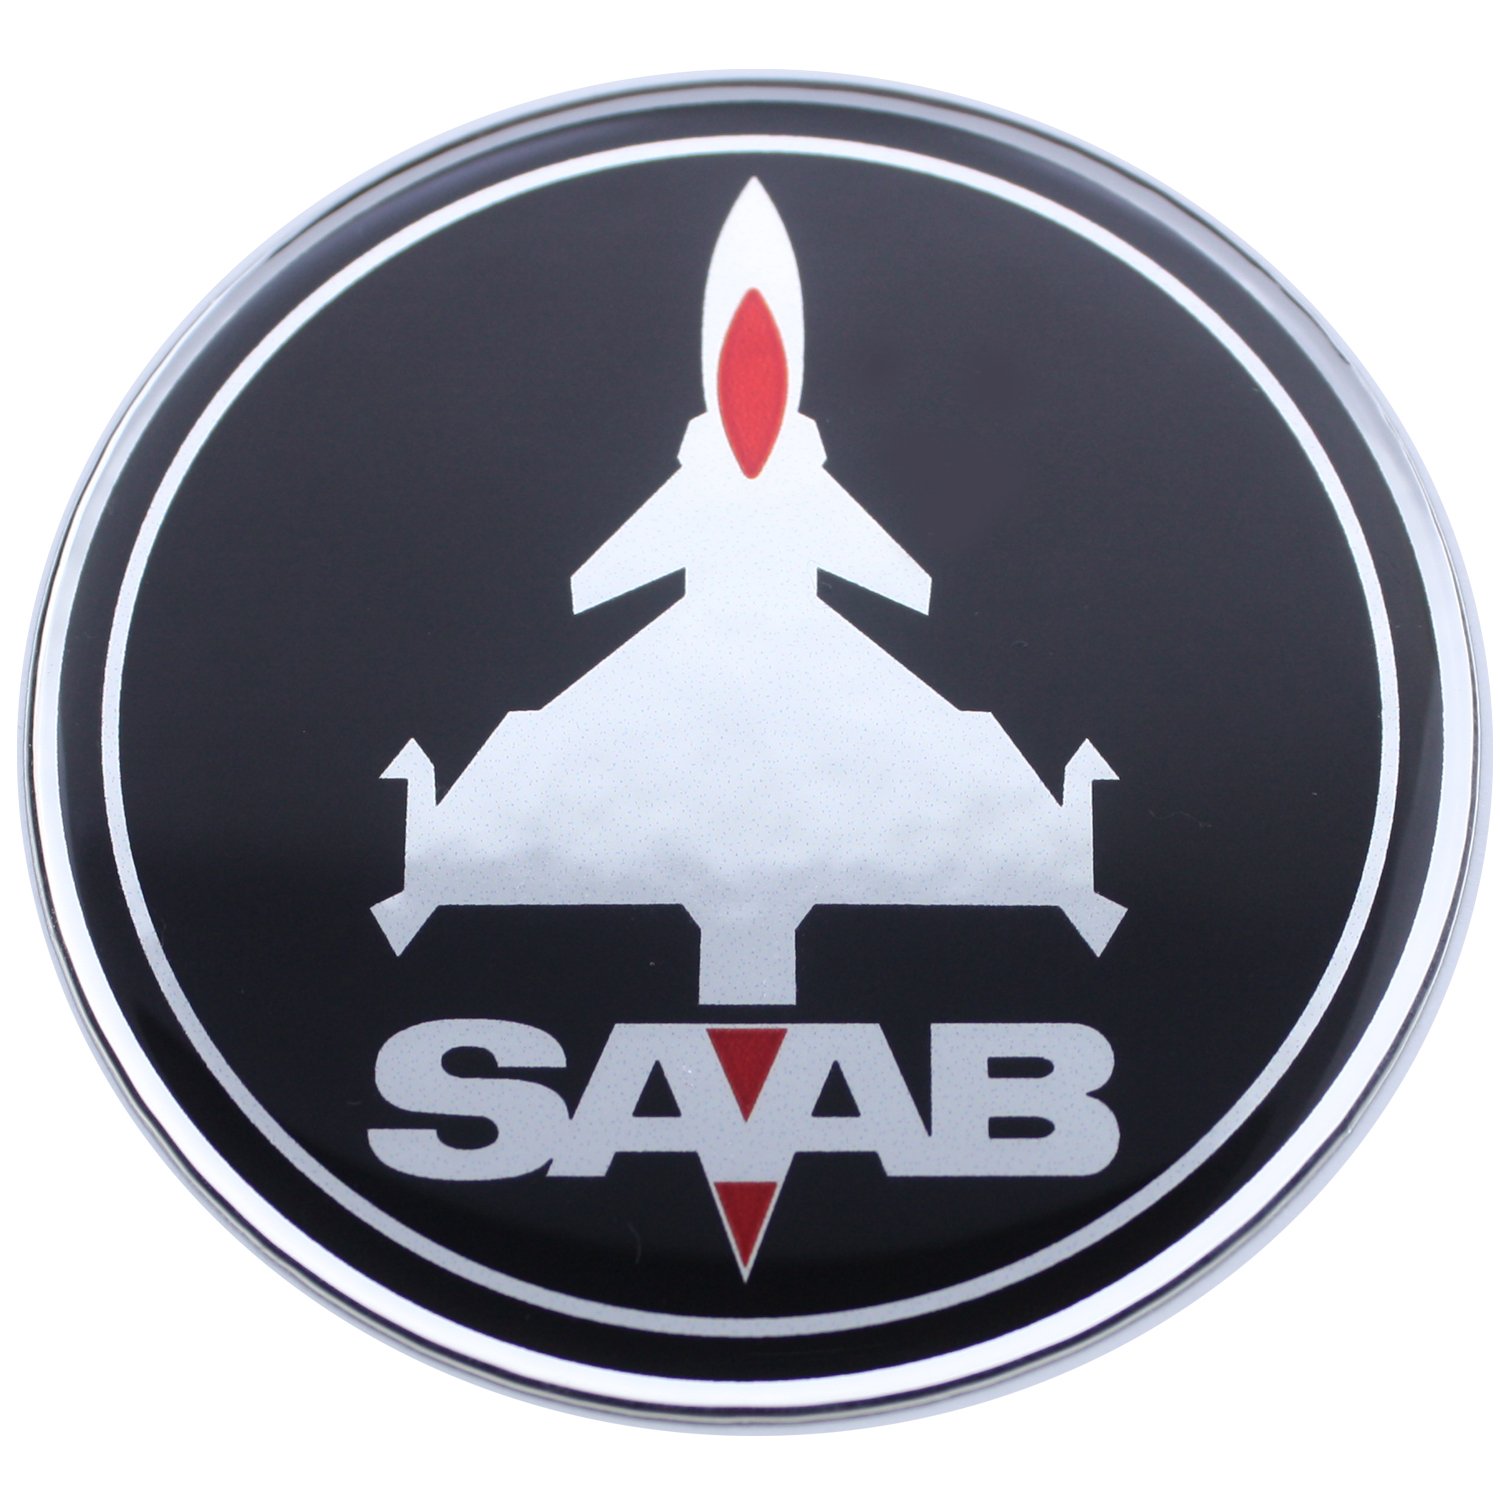 44 mm Jet-Flugzeug SAB schwarz rot Chrom Abzeichen Emblem gewölbt 3D Aufkleber selbstklebende Rückseite 9-3 von EU-Decals